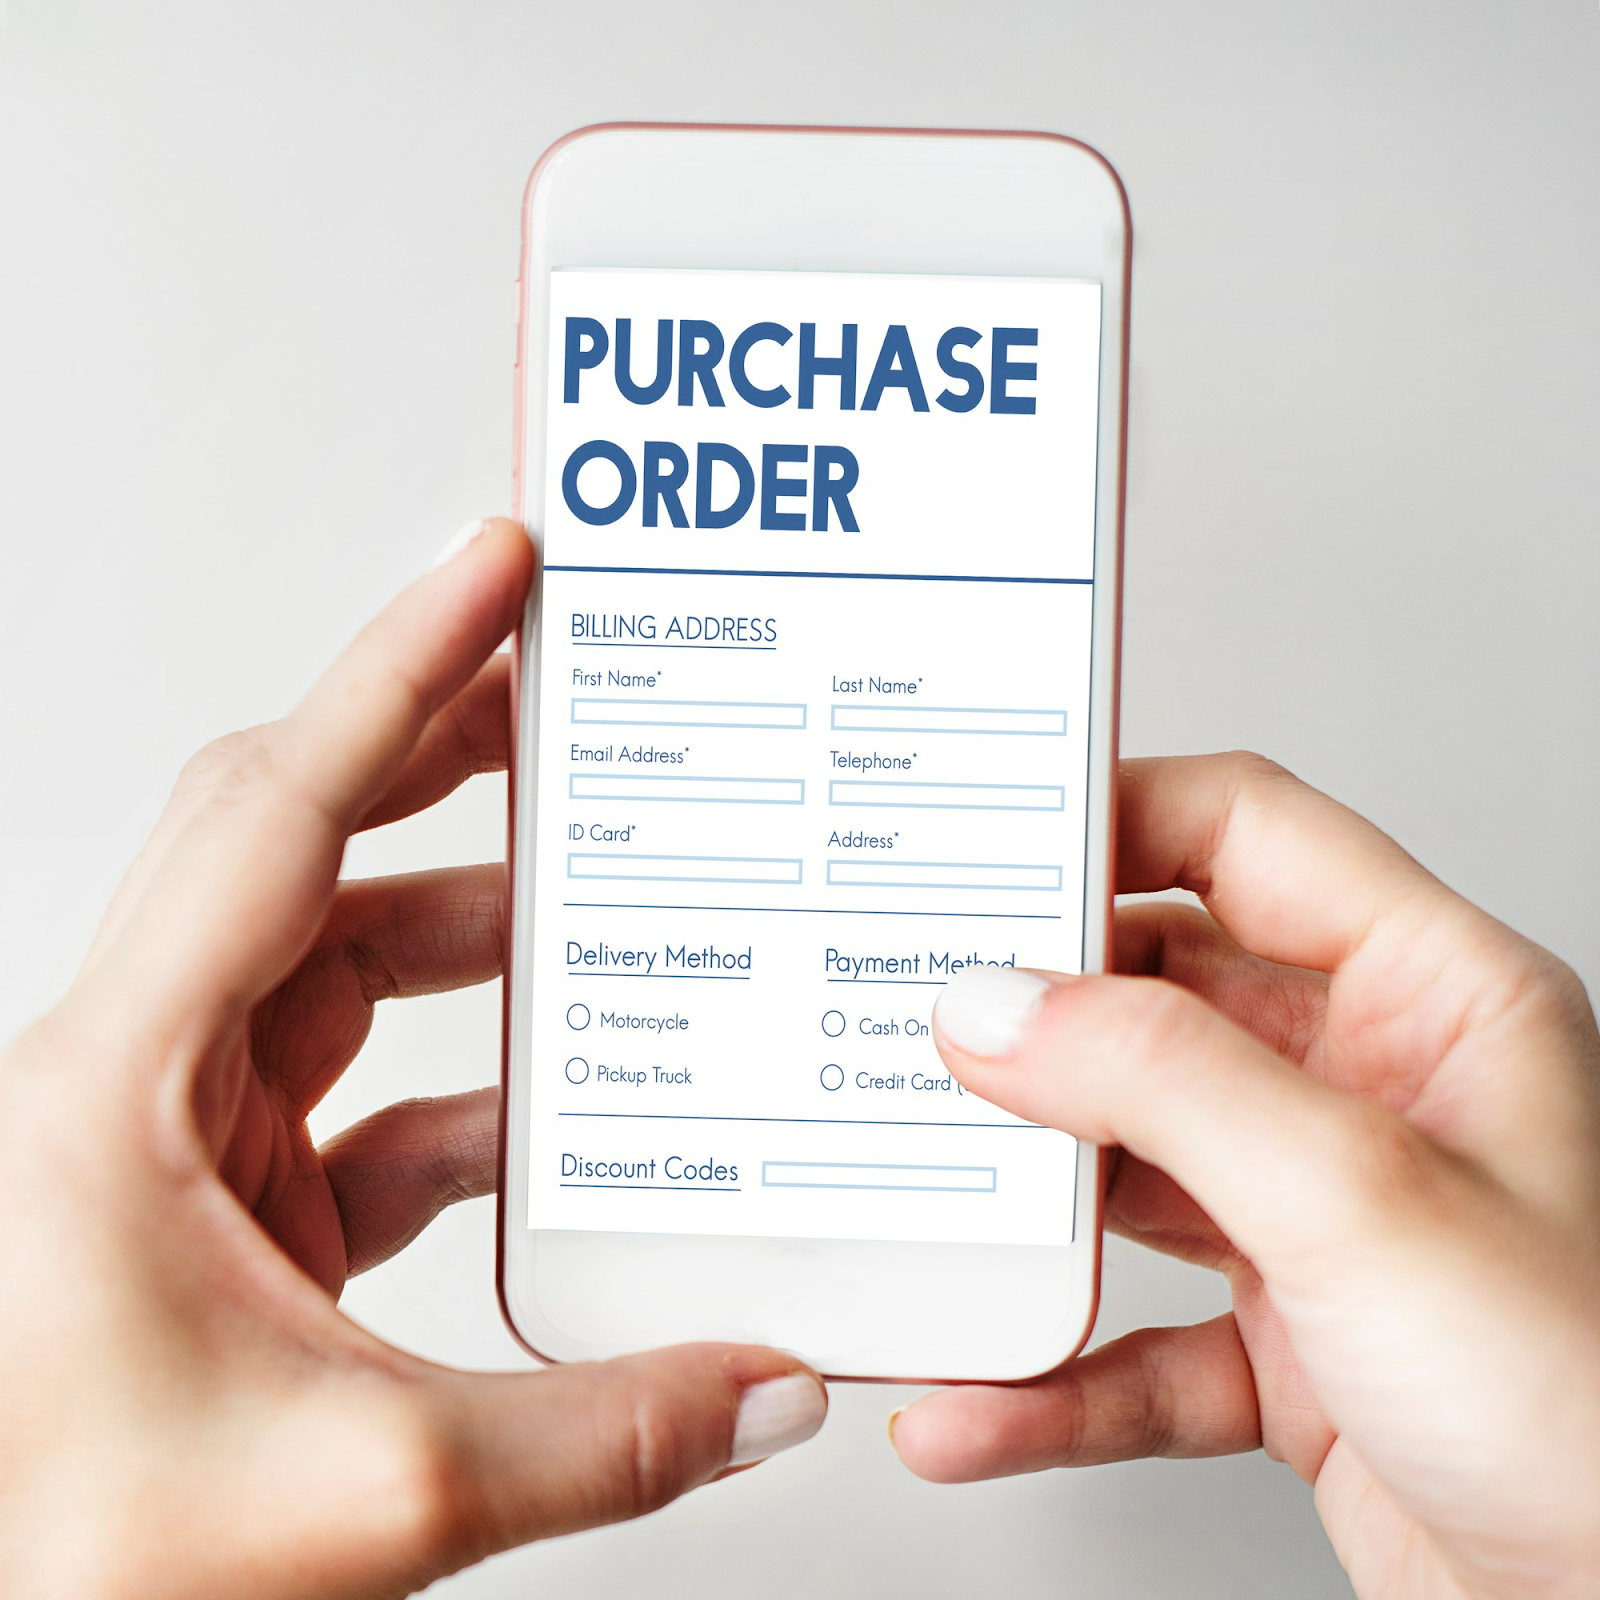 Purchase order sangat bermanfaat dalam proses jual beli karena dapat menghindari terjadinya berbagai kesalahan